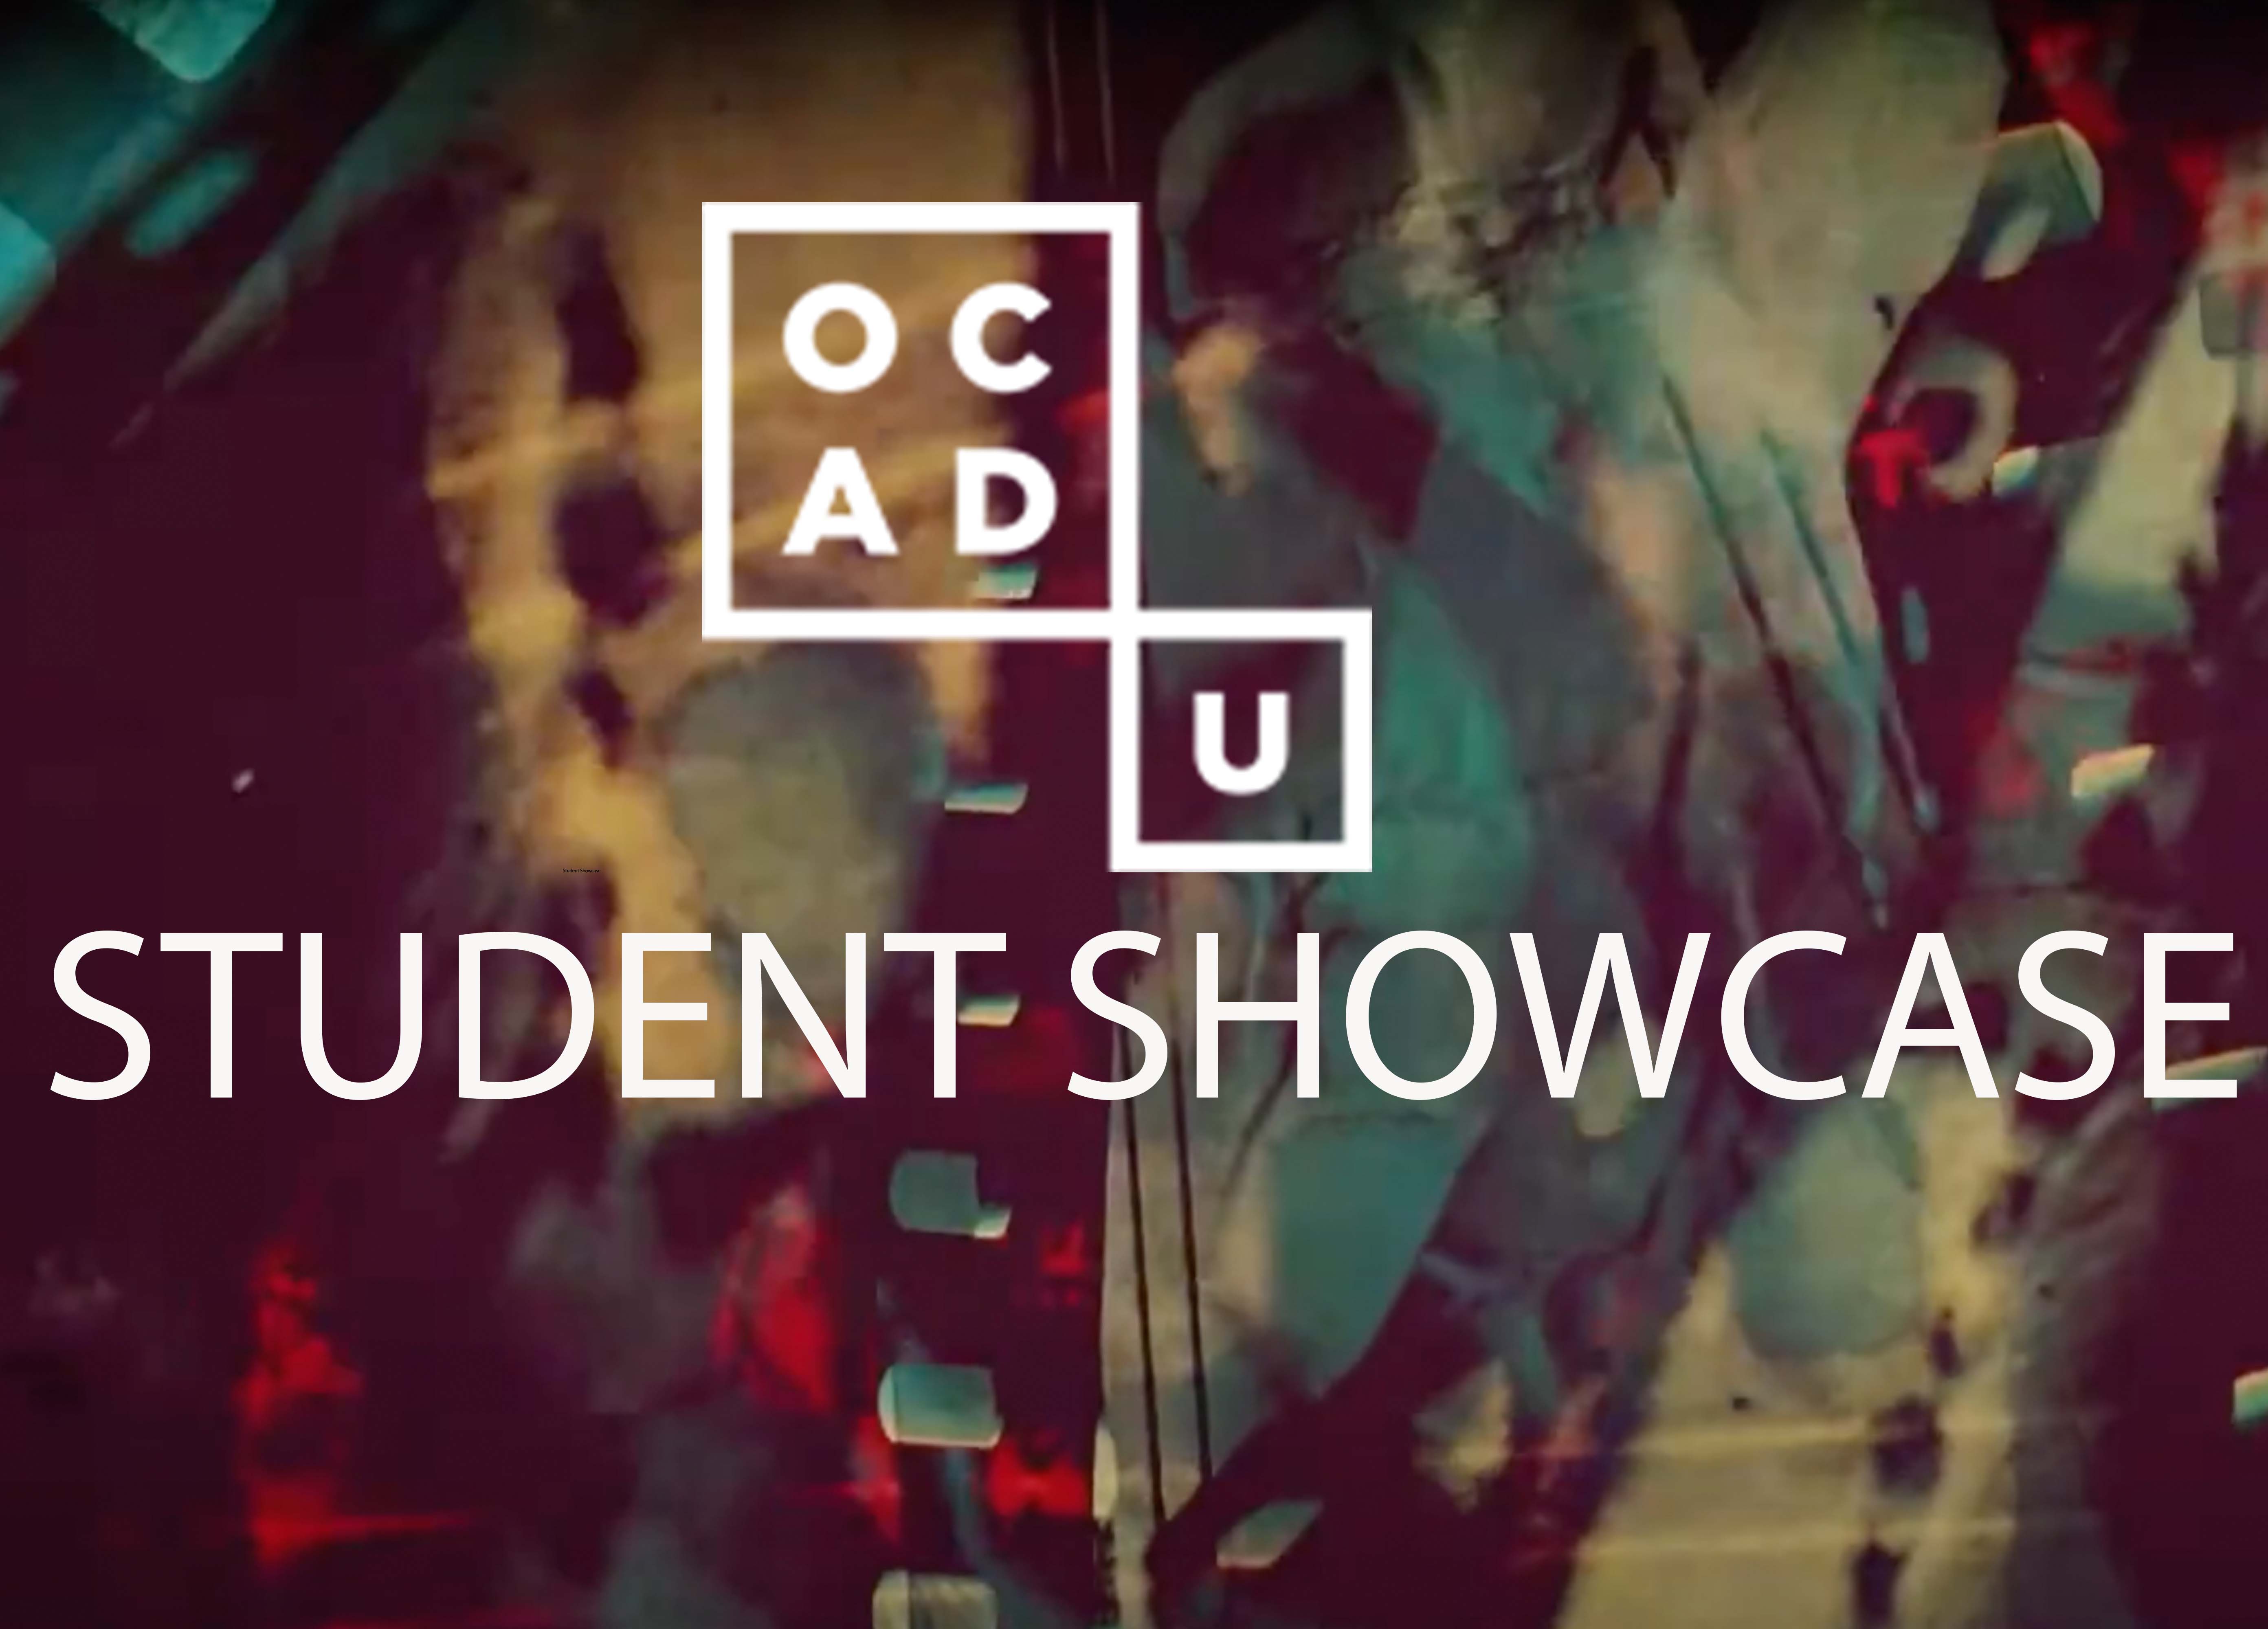 OCAD U Logo & White test saying Student Showcase. Abstract colourful background